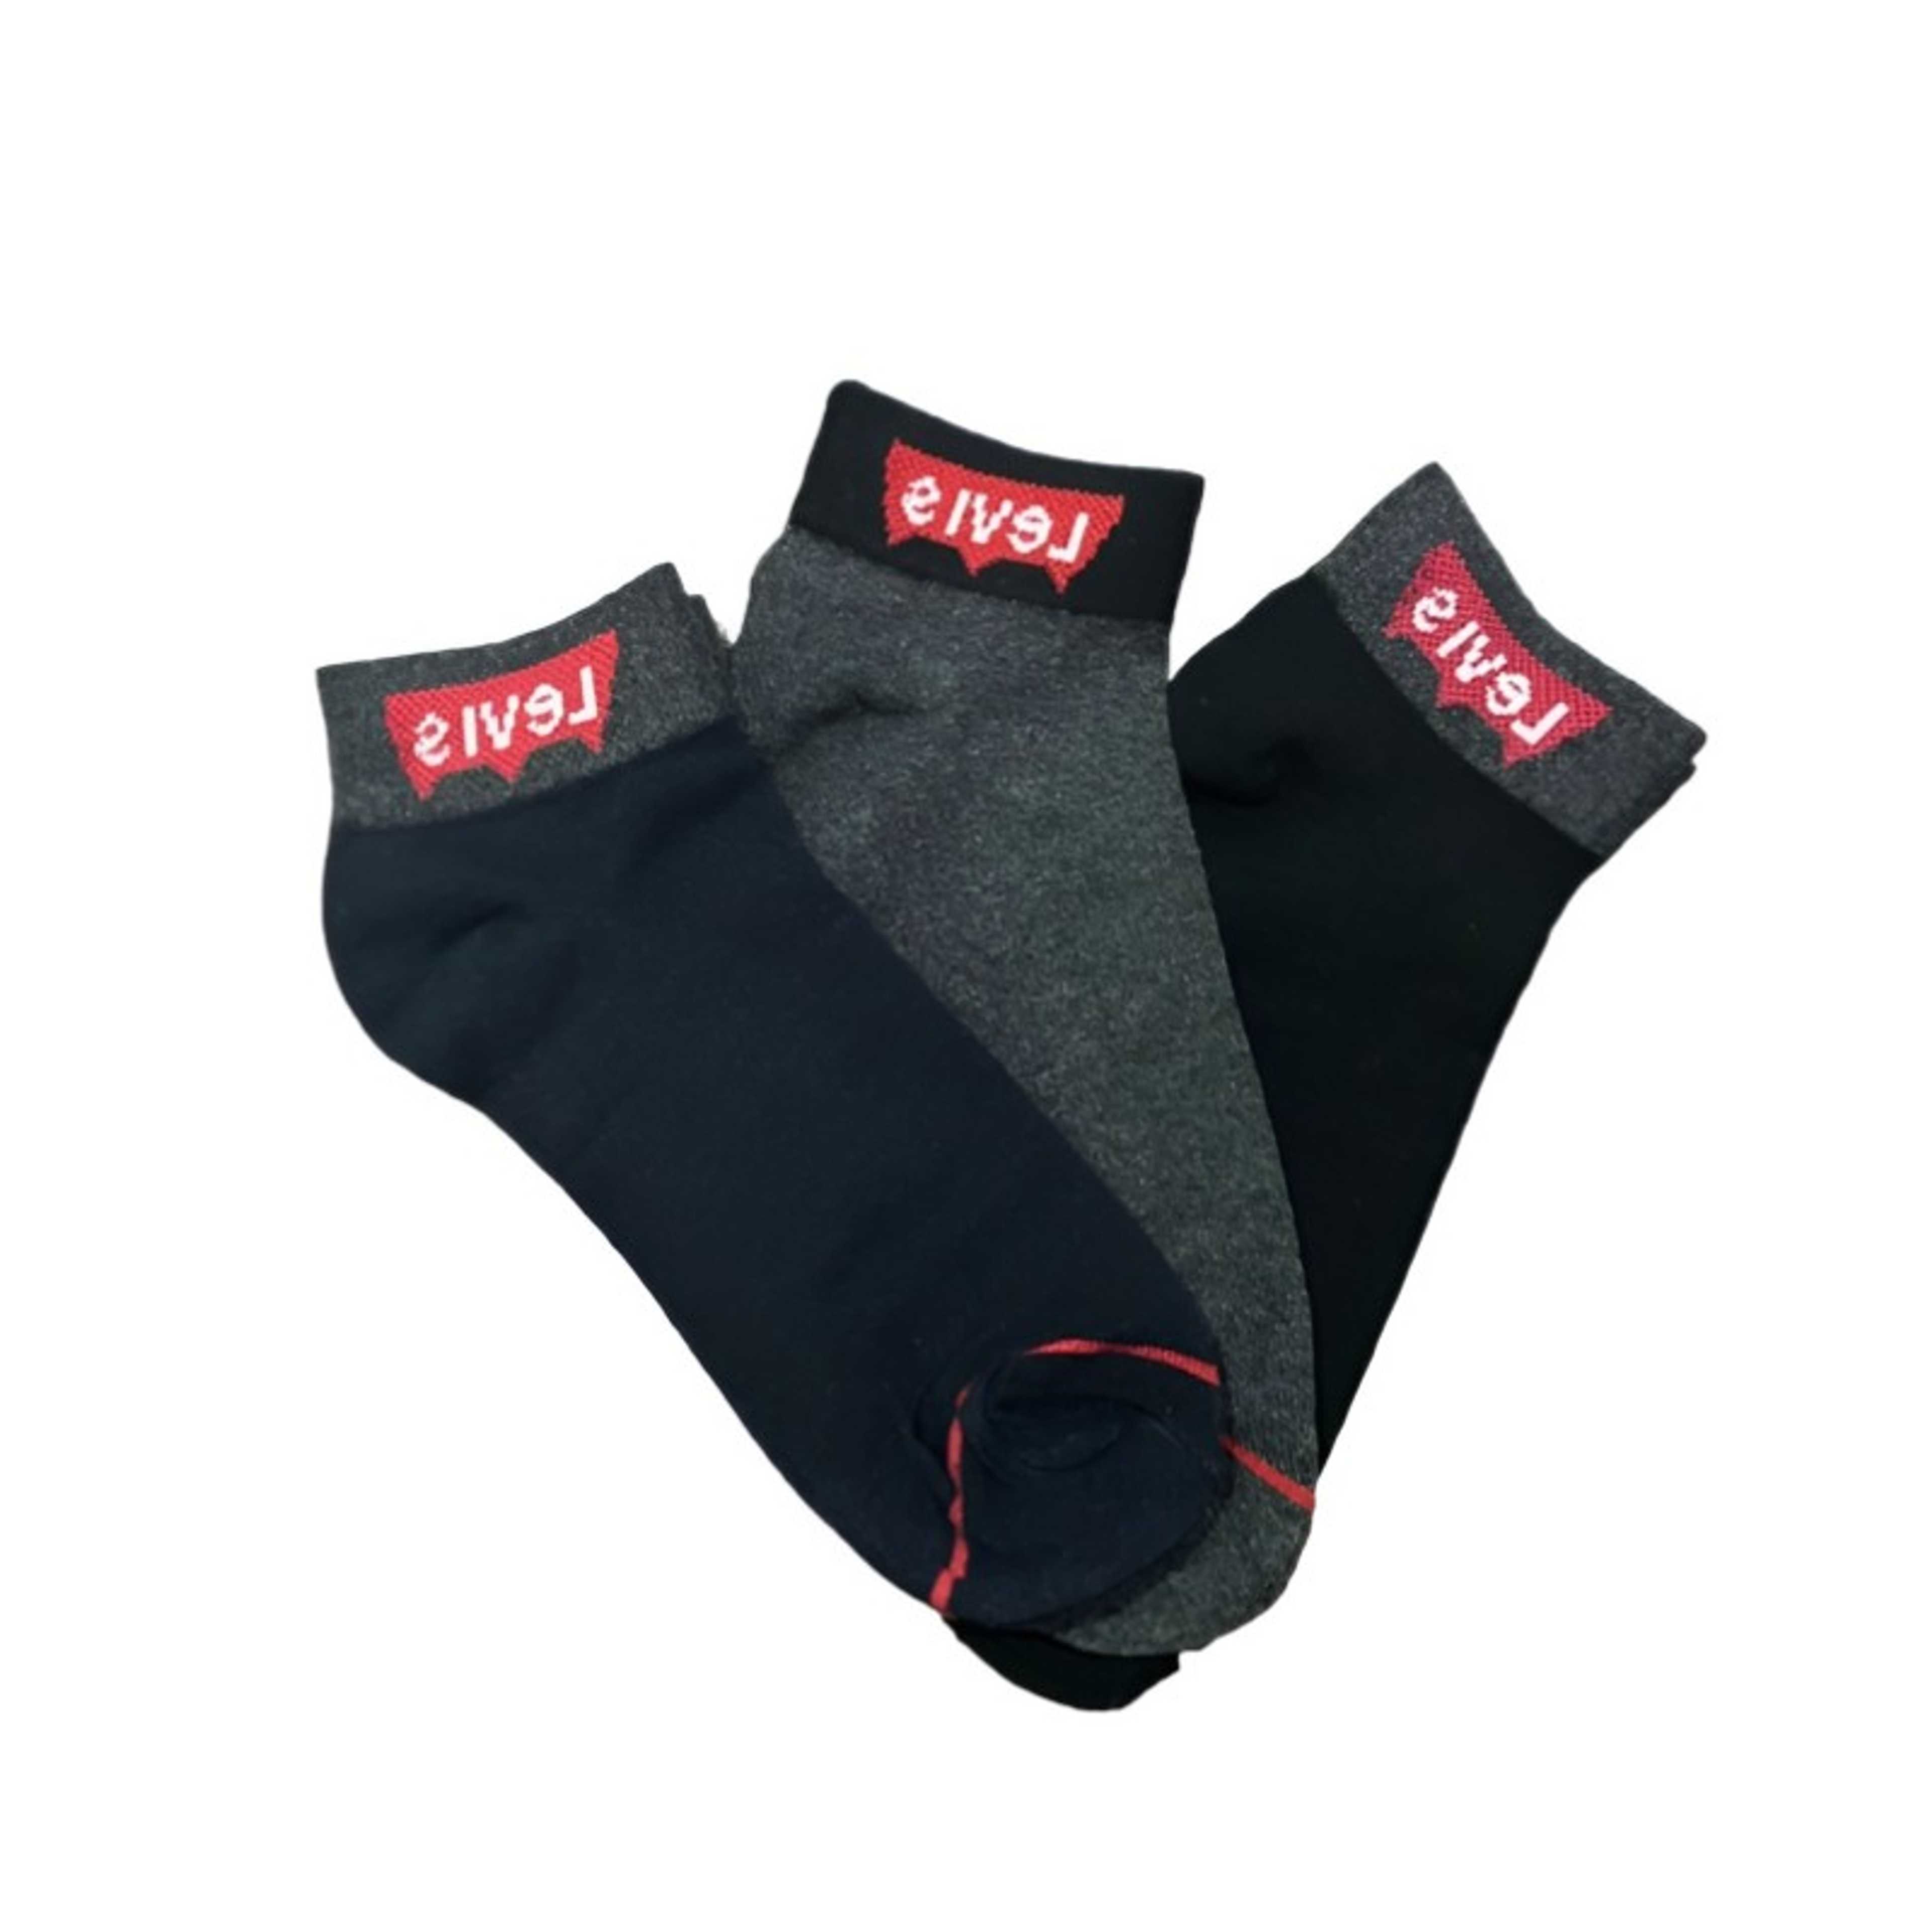 Socks Pack Of 3 Pairs Ankle Socks For Men Women, Braded Socks, Cotton Moza - Random colors